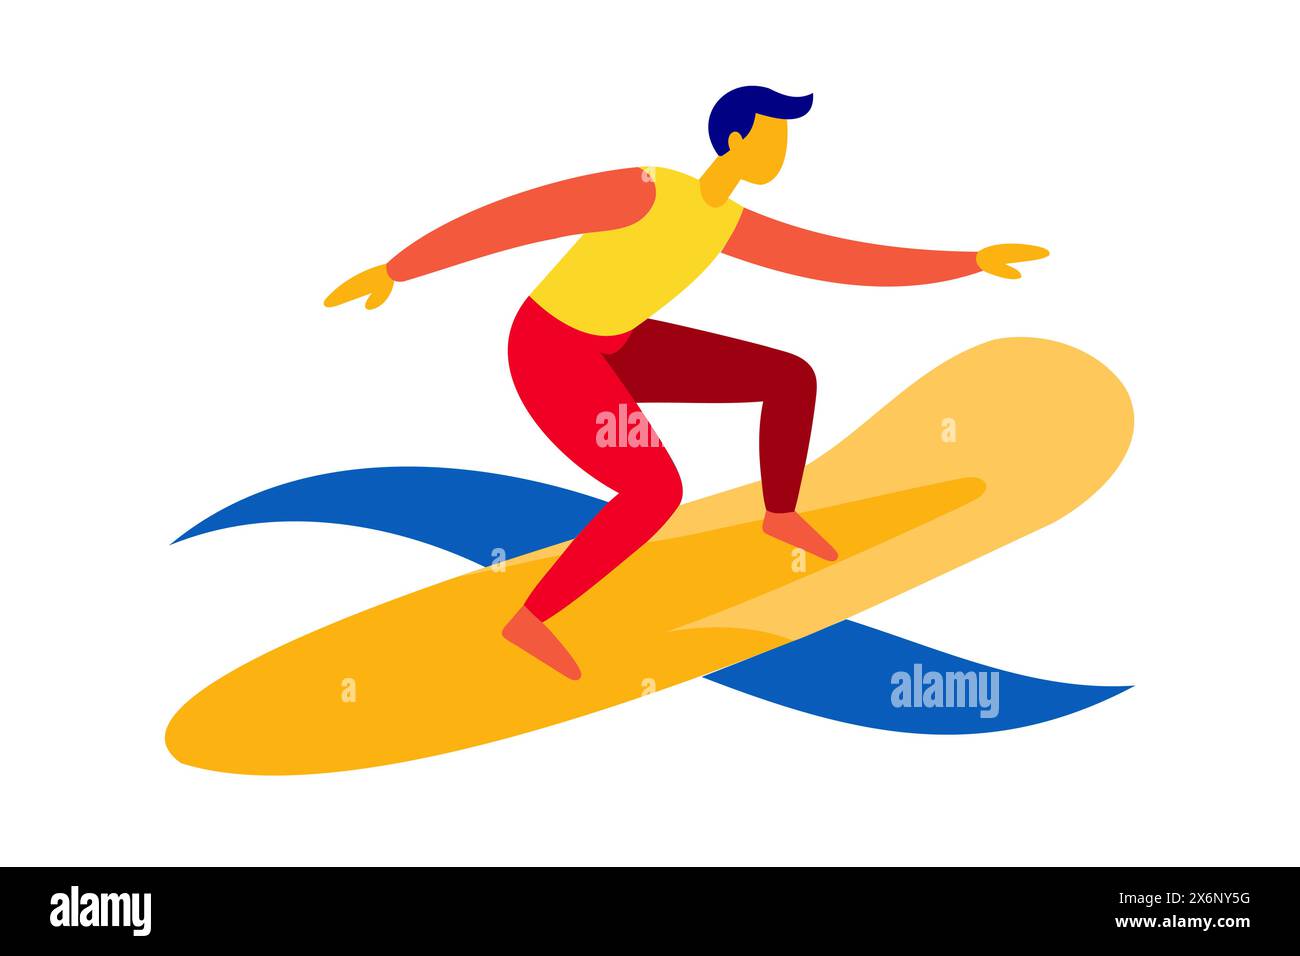 Mann, der auf einer pulsierenden Welle surft. Surfer auf einem farbenfrohen Surfbrett auf einer Welle. Konzept von Wassersport, Action, Urlaub. Grafische Abbildung. Drucken, Stock Vektor